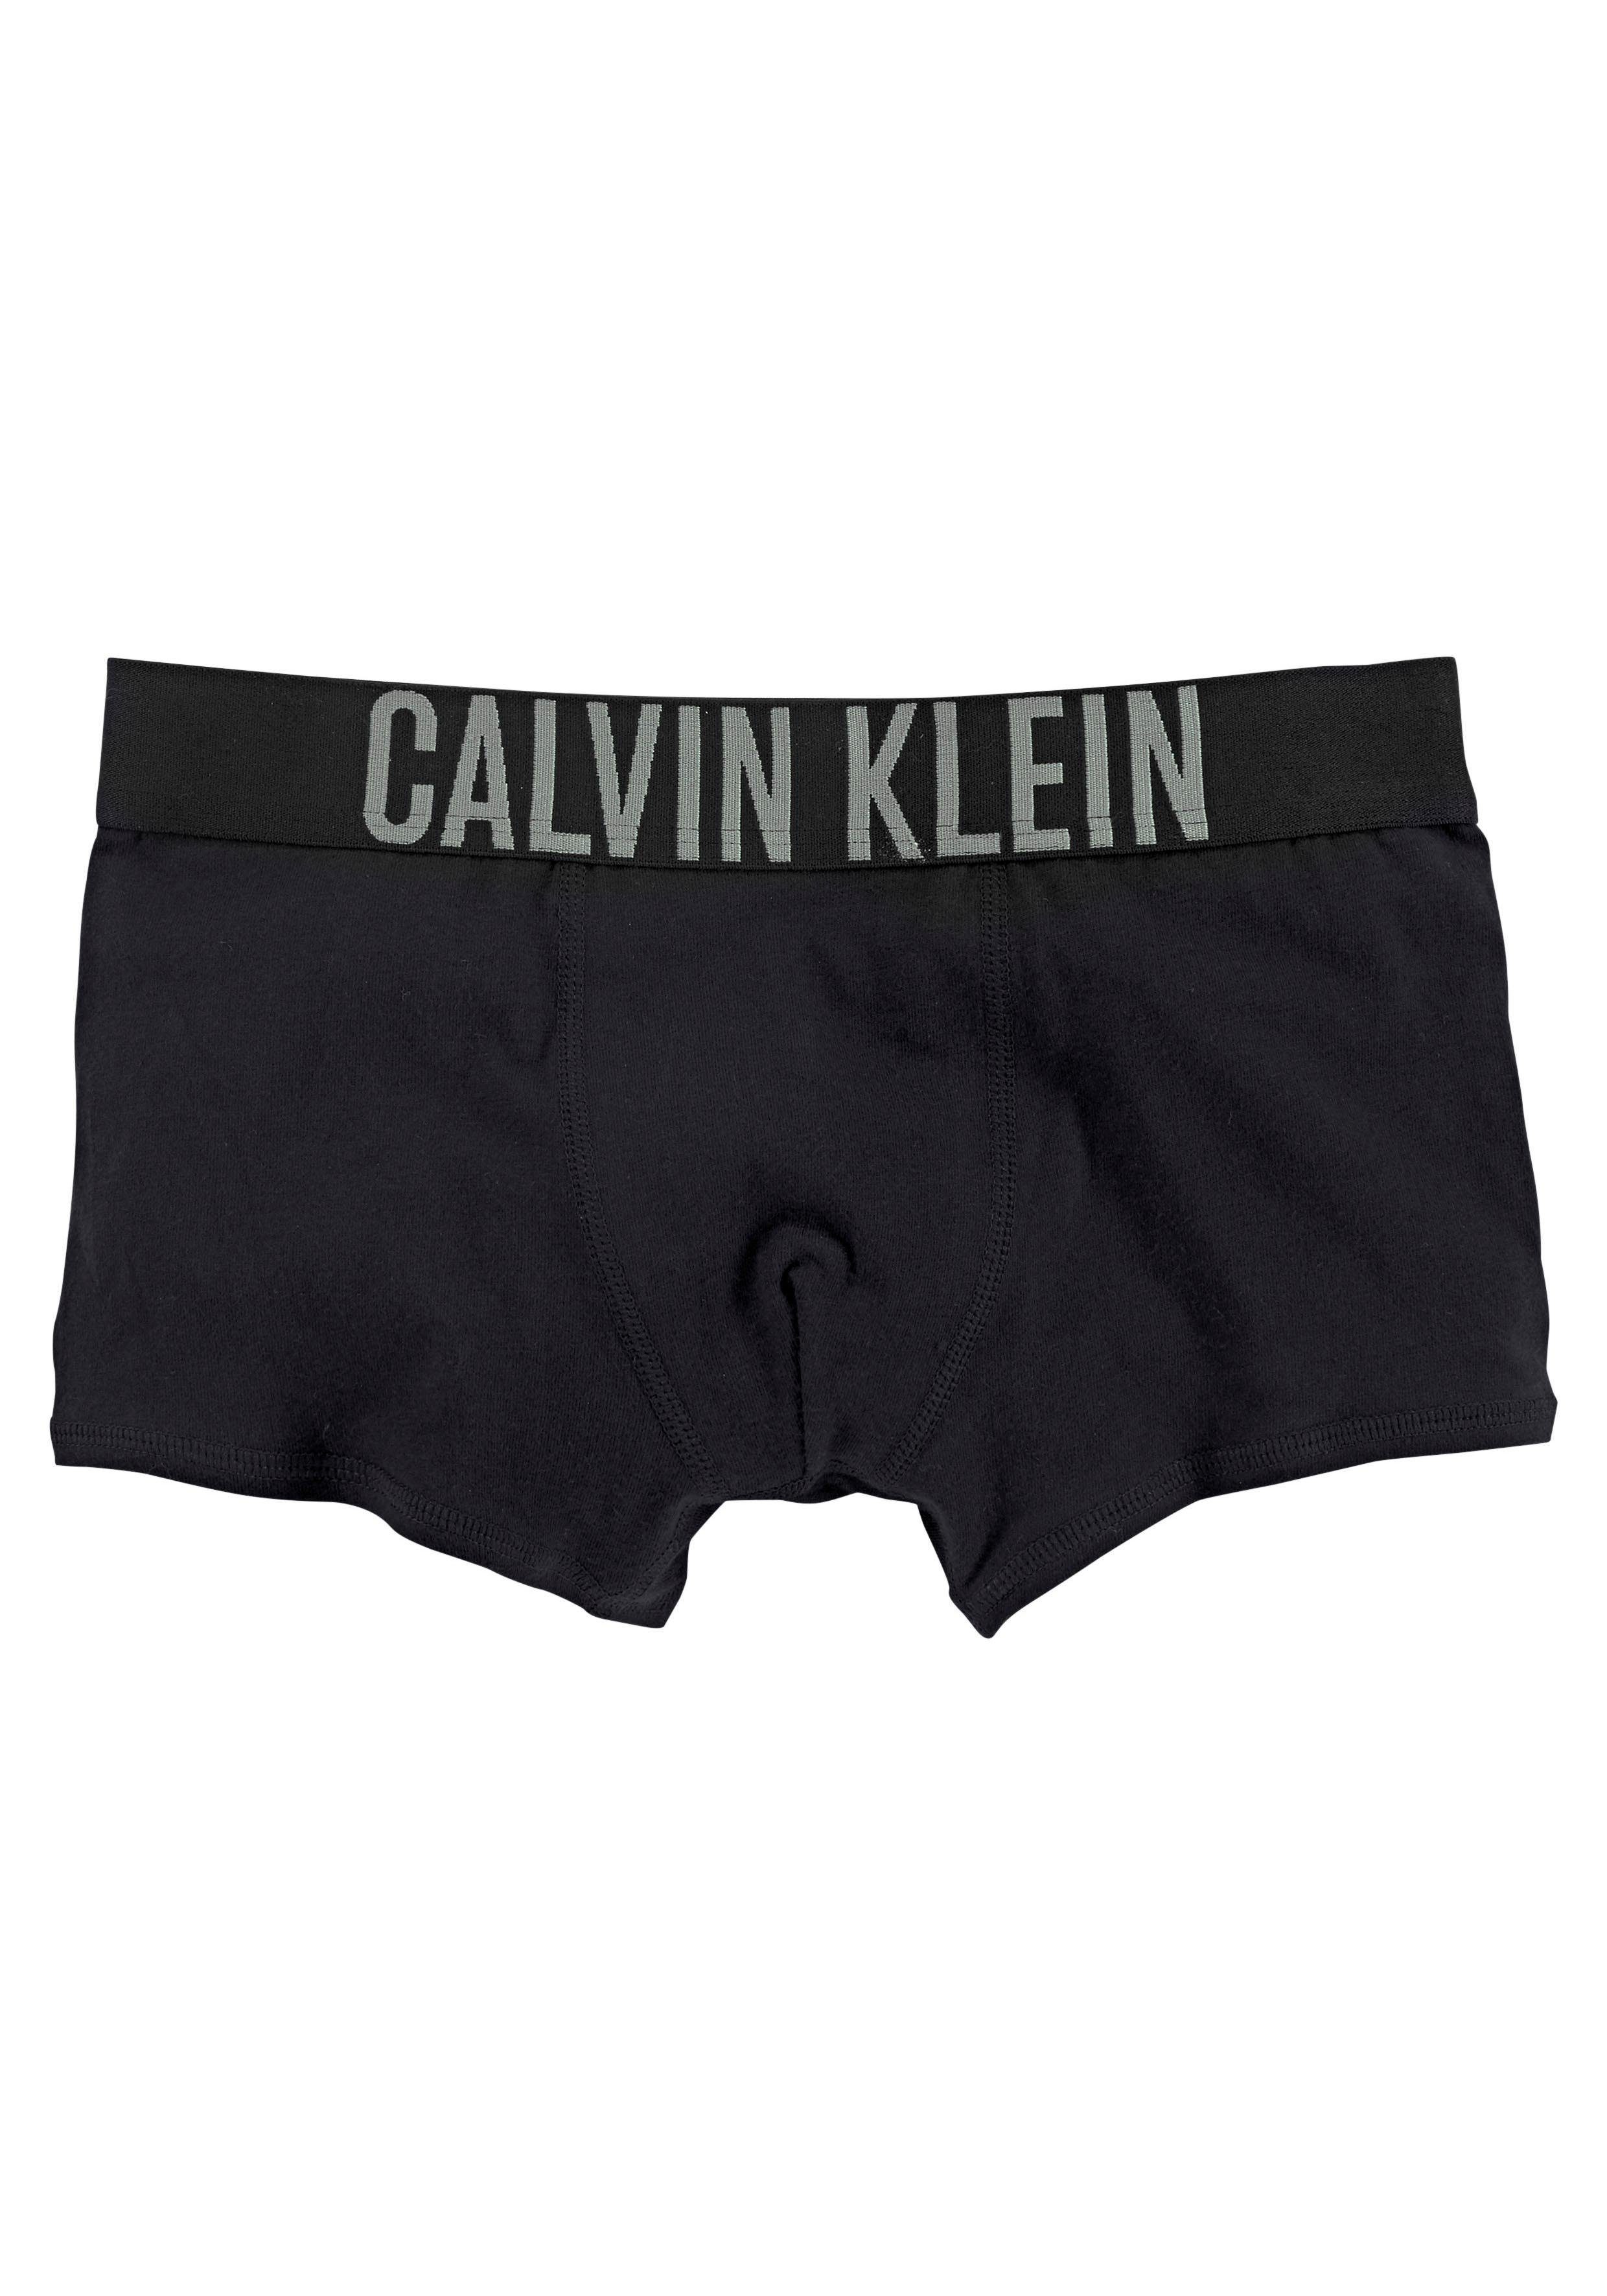 Underwear Junior Kids Kinder (2-St) Trunk MiniMe Intenese Power schwarz Klein Calvin